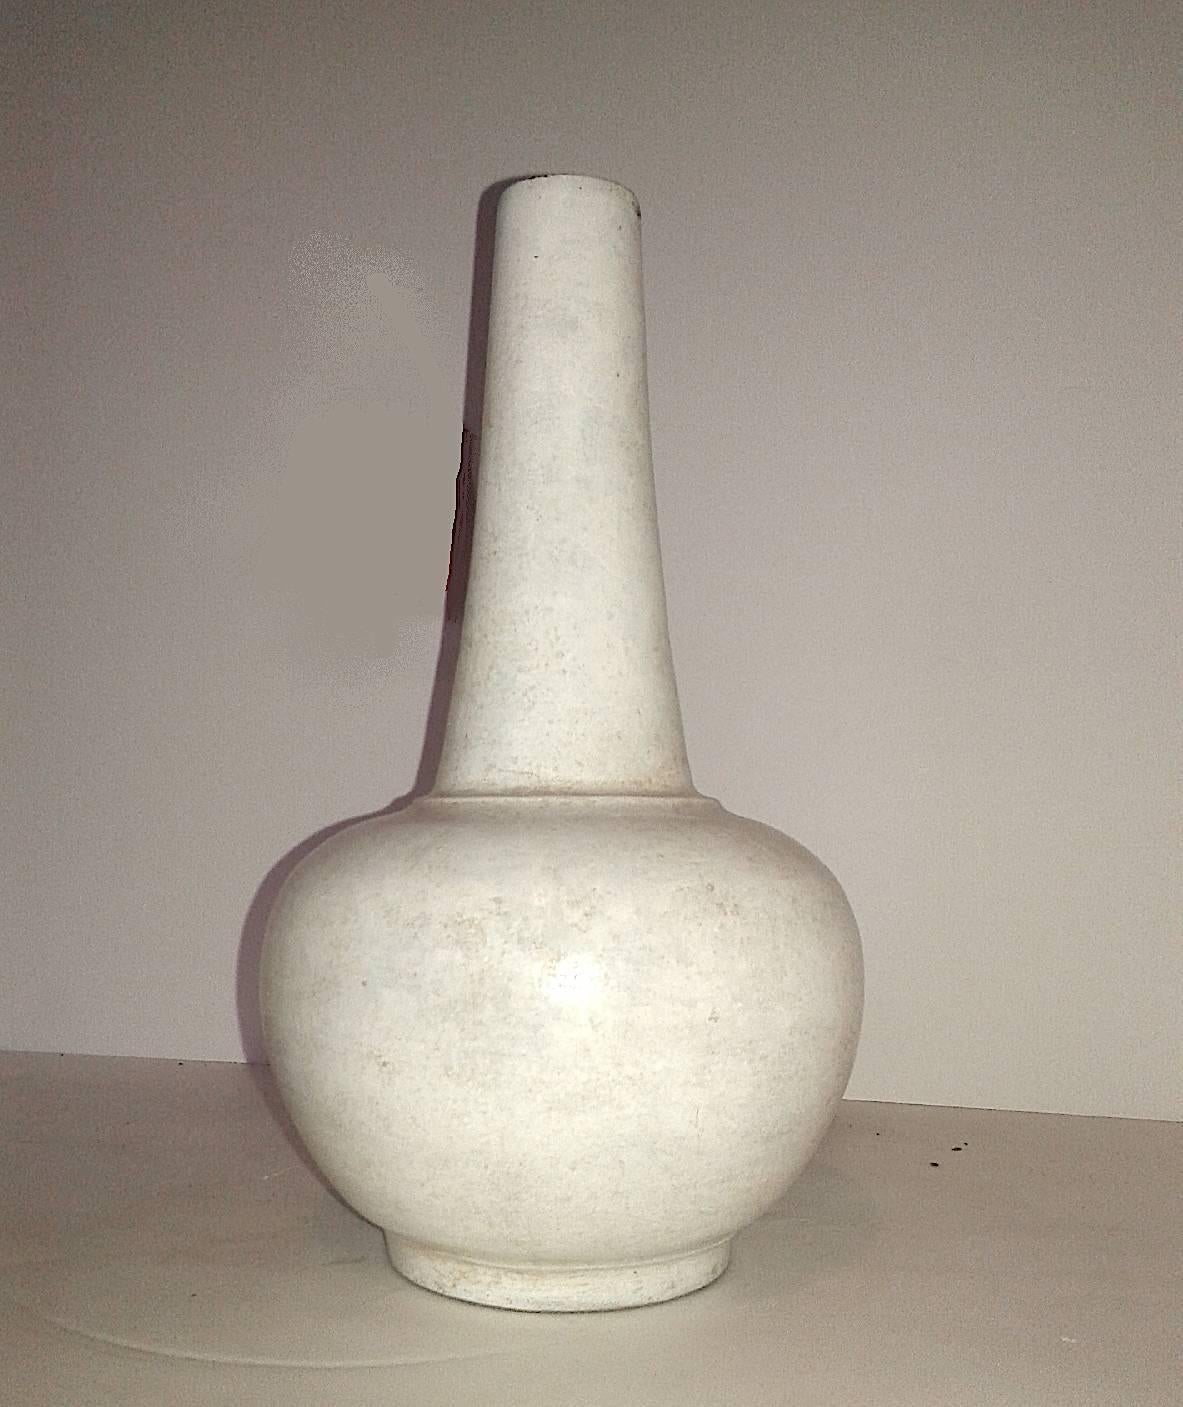 Glazed Ceramic Vase with White Glaze and Long Neck